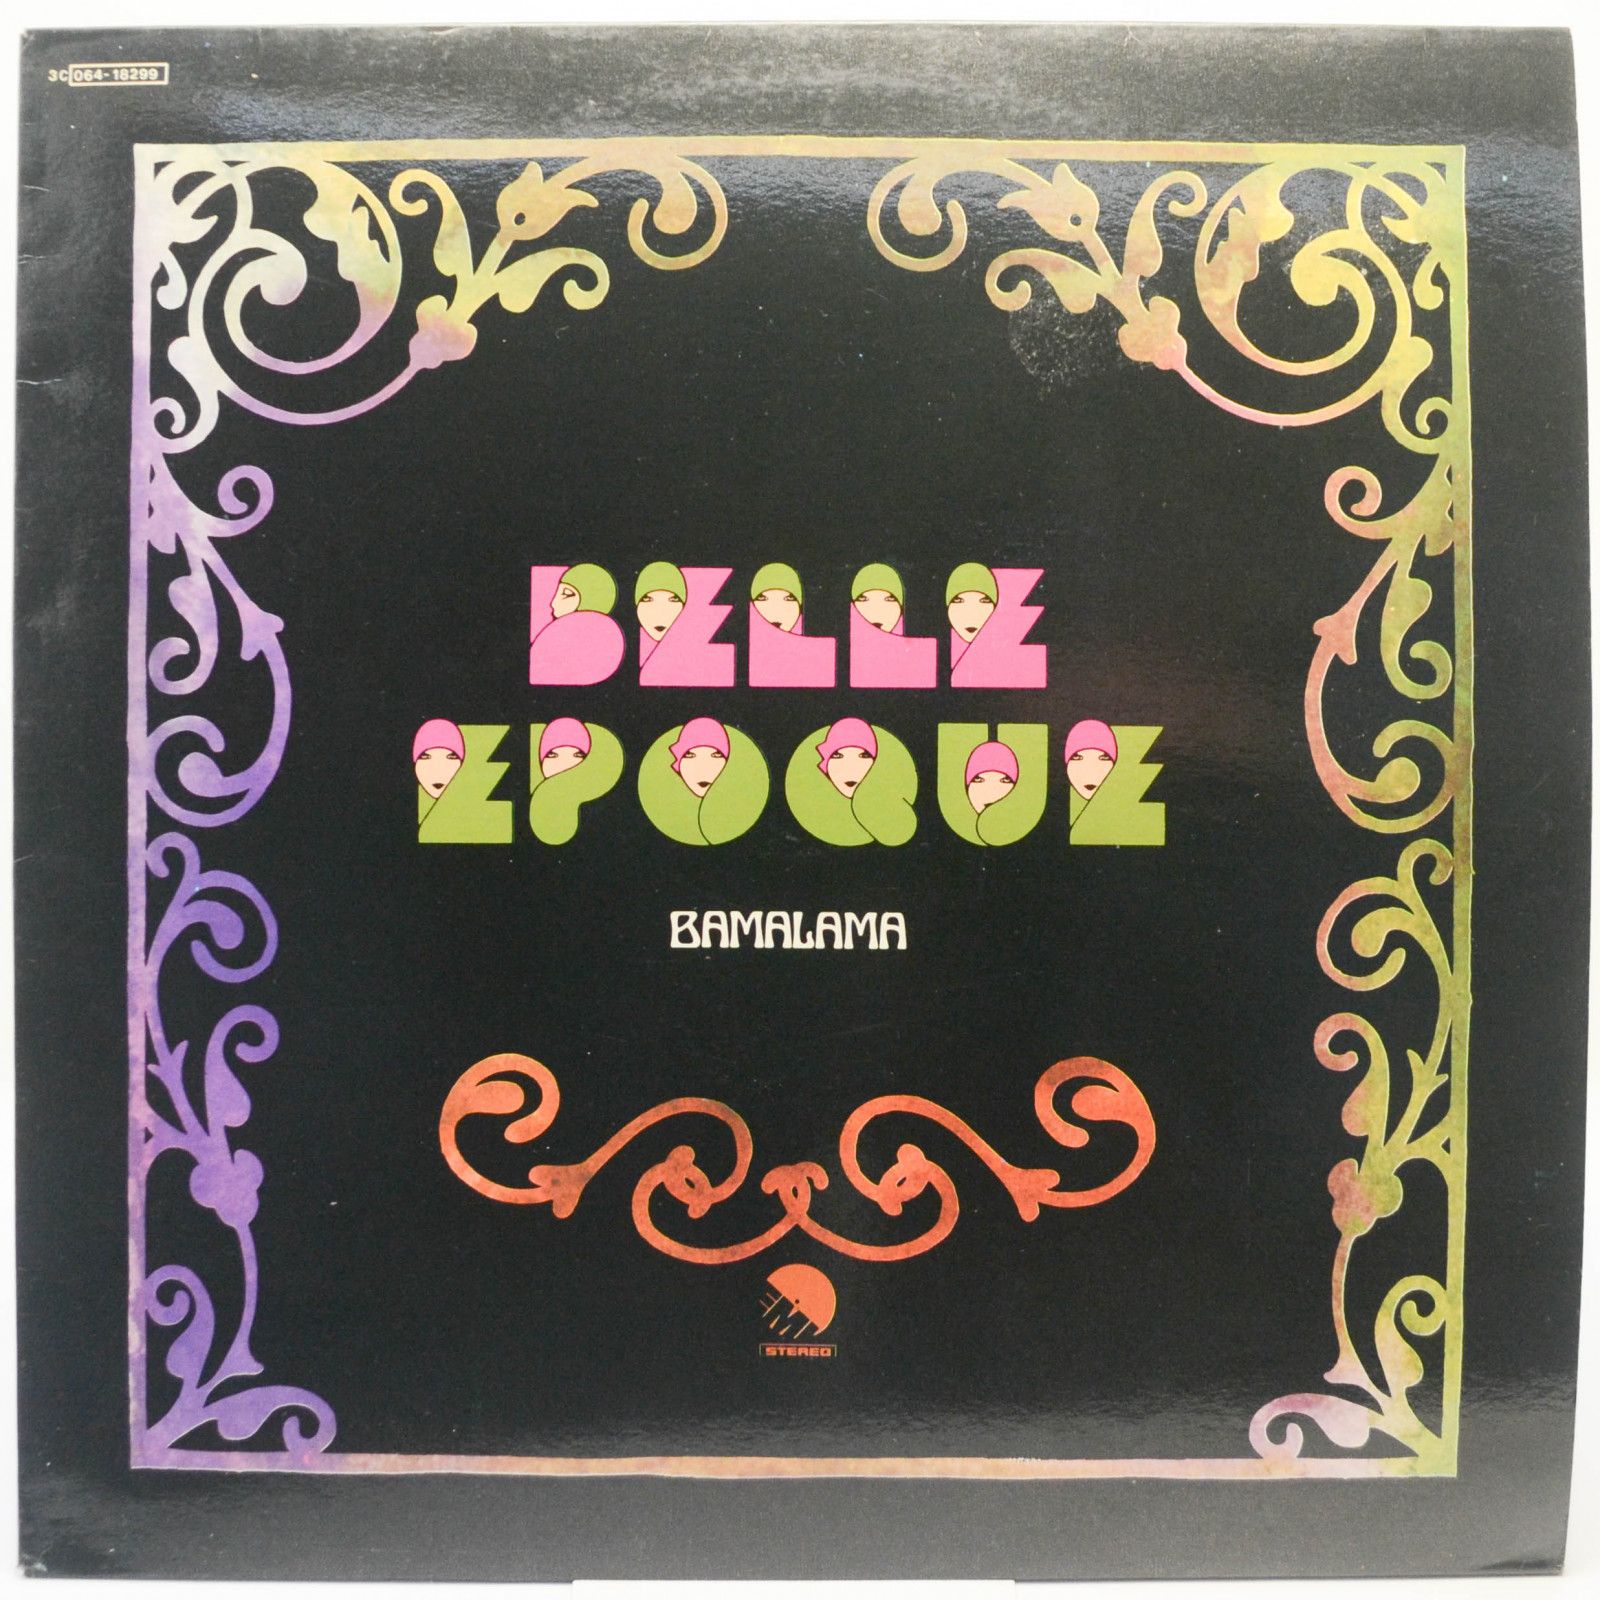 Belle Epoque — Bamalama (1-st, Italy), 1977